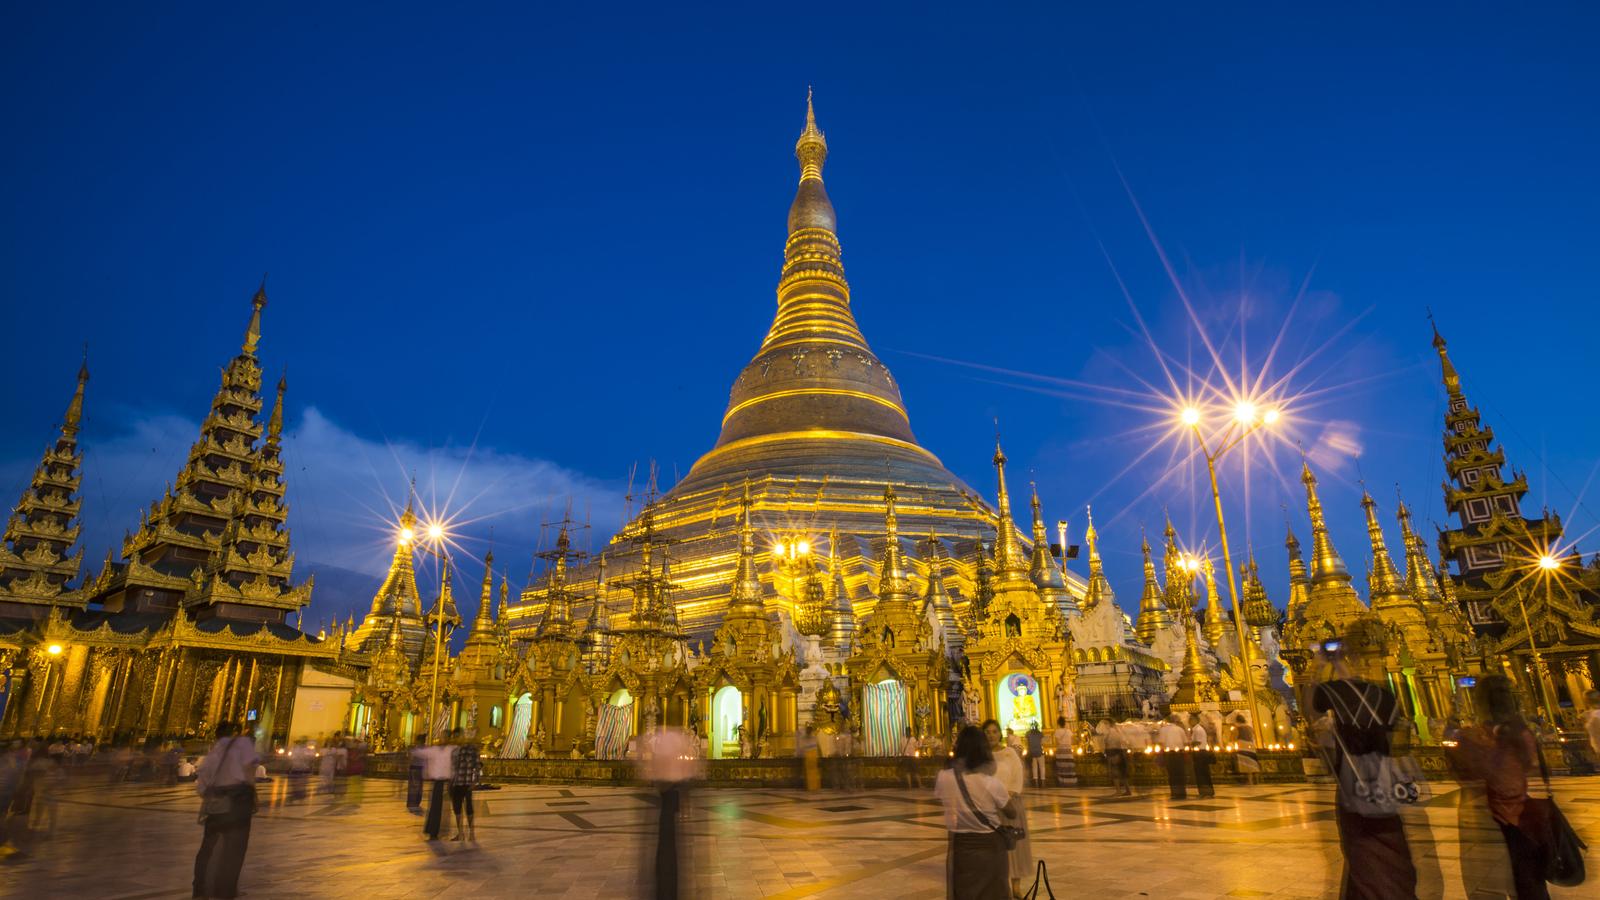 Dịch vụ chuyển phát nhanh đi Myanmar giá rẻ.